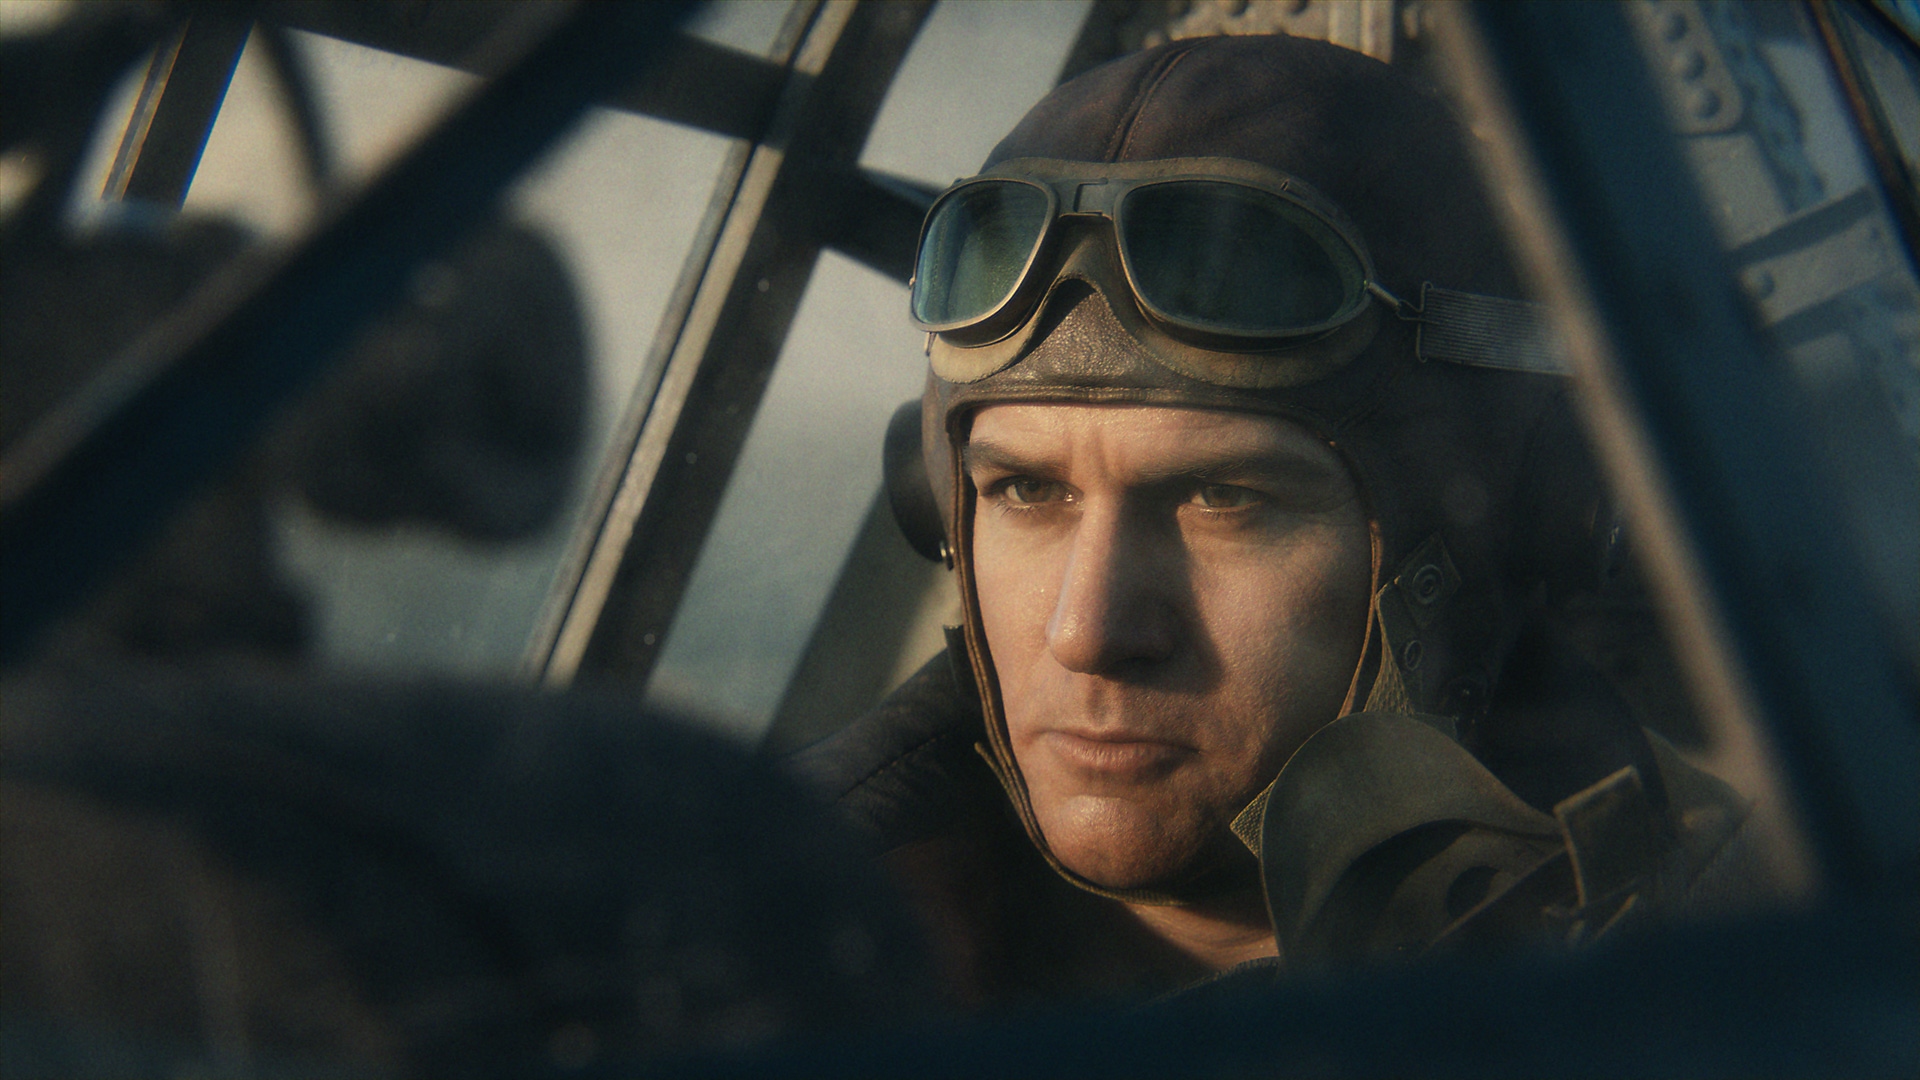 Call of Duty Vanguard – snímka obrazovky zachytávajúca pilota v lietadle z 2. svetovej vojny